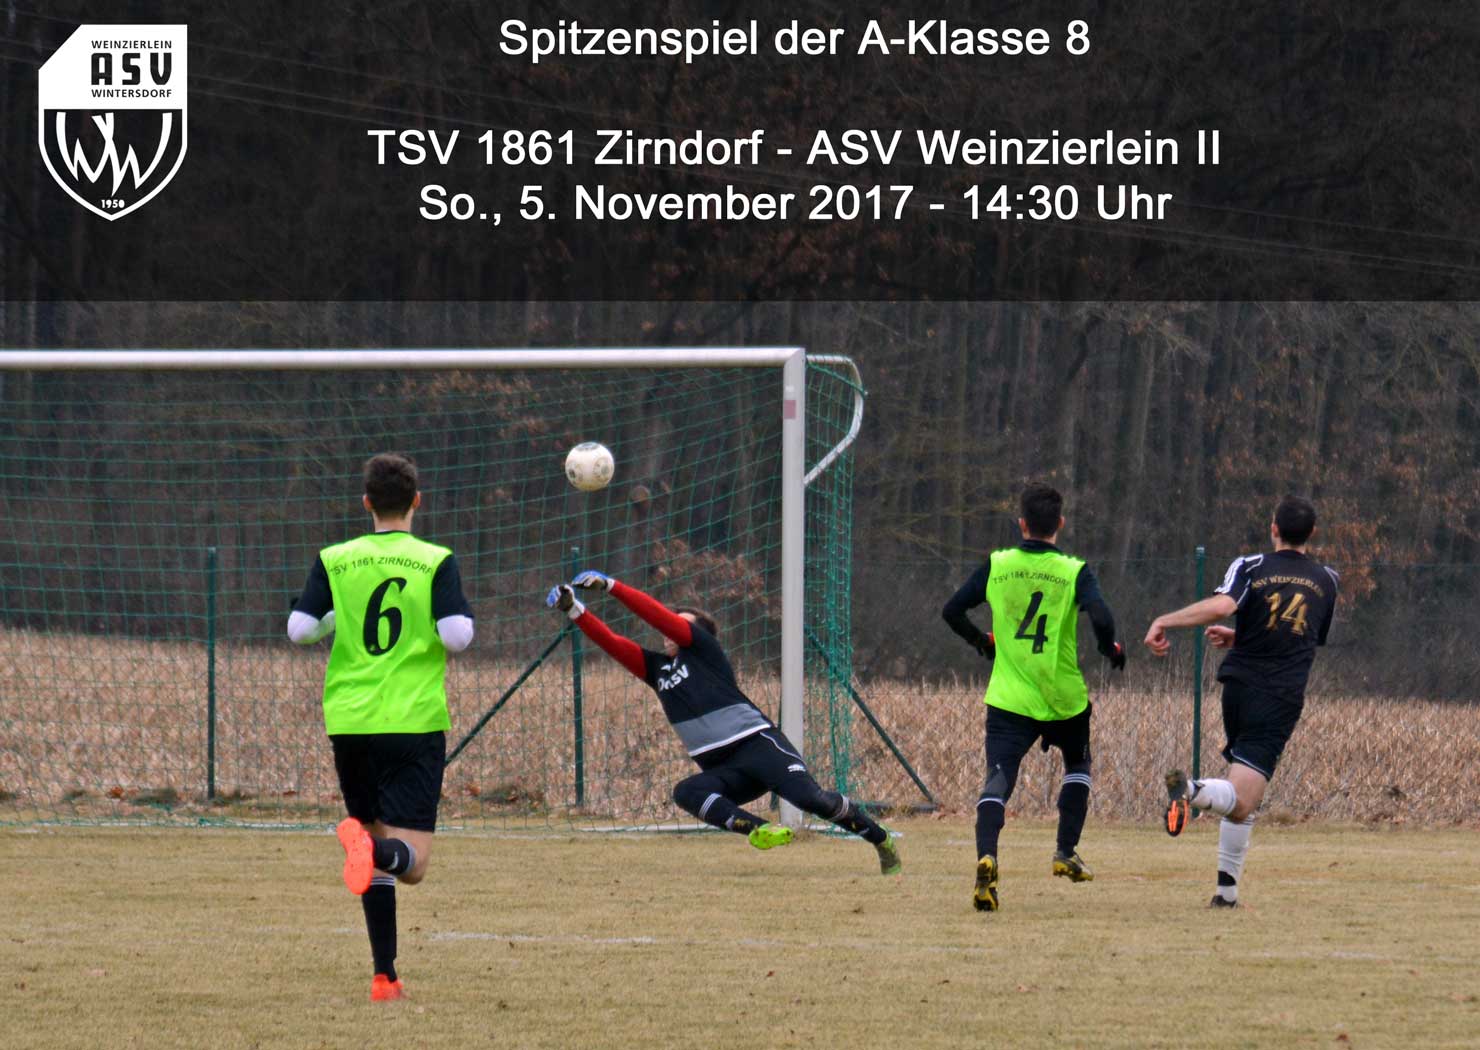 Fußball: Spitzenspiel der A-Klasse 8 in Zirndorf